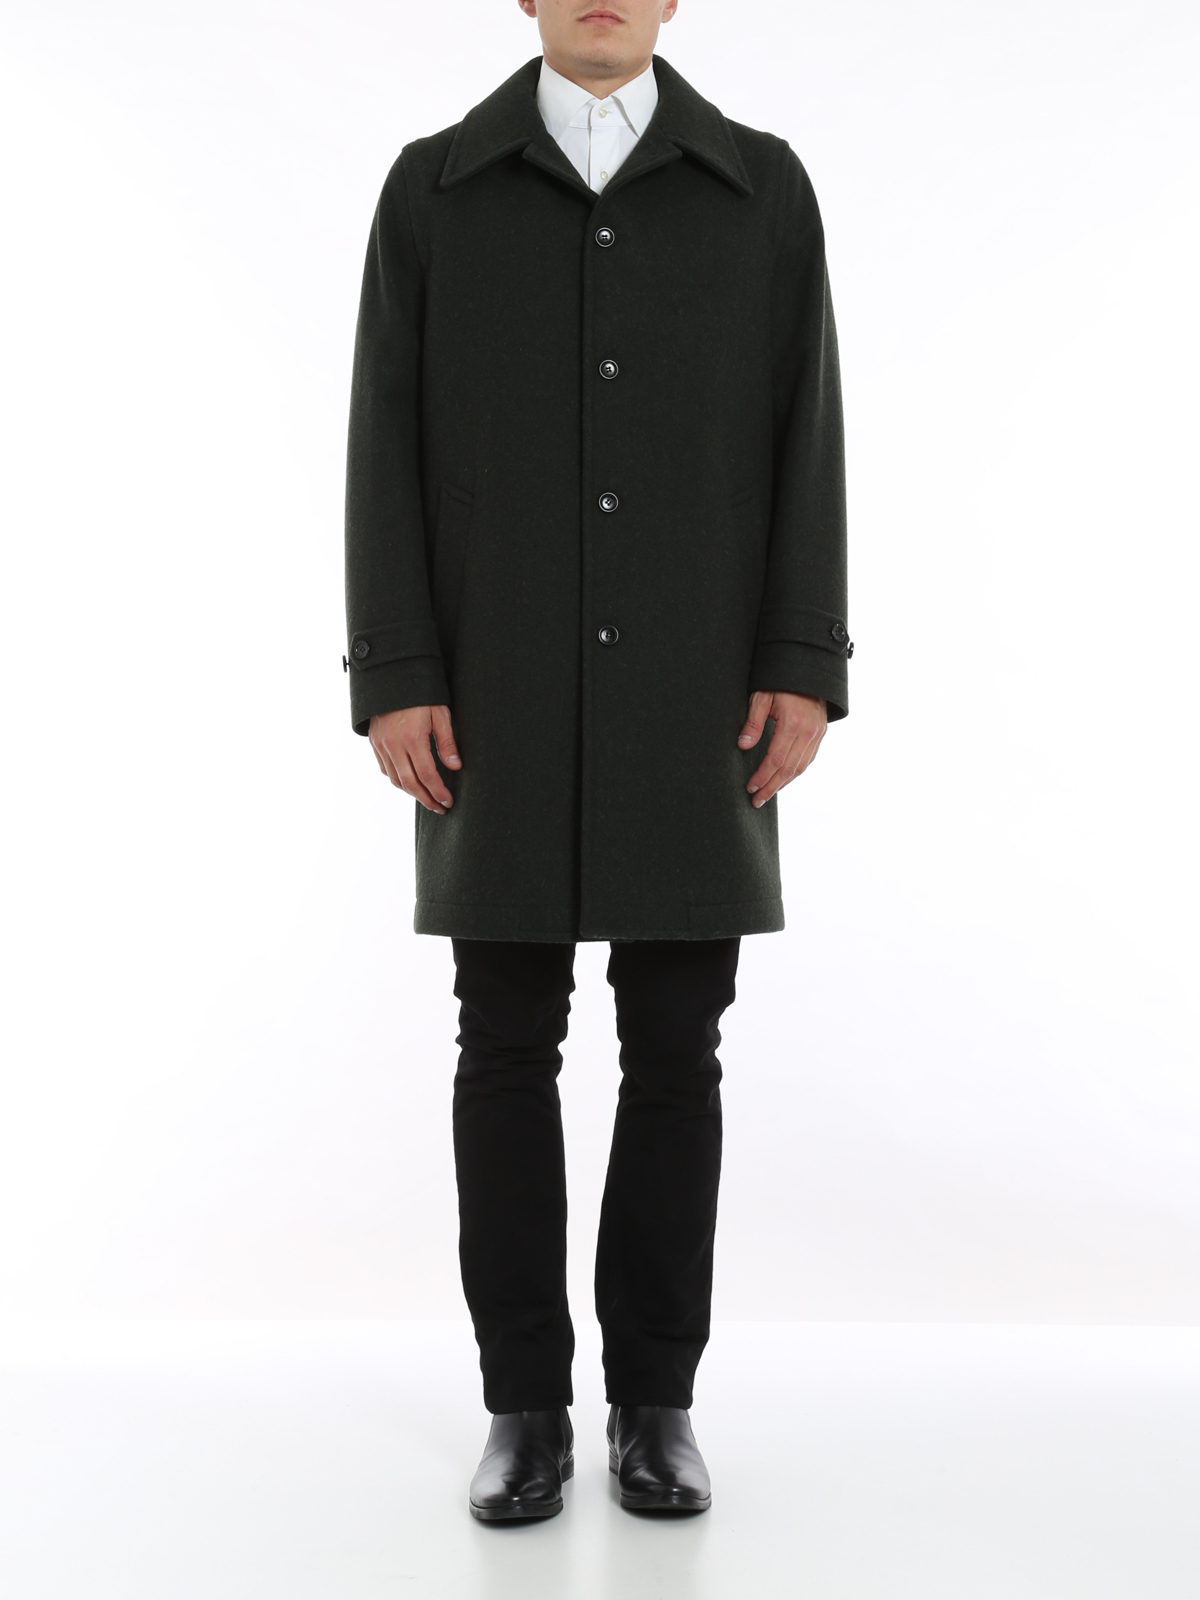 Knee length coats Gucci - Loden coat - 397908Z533A3372 | iKRIX.com